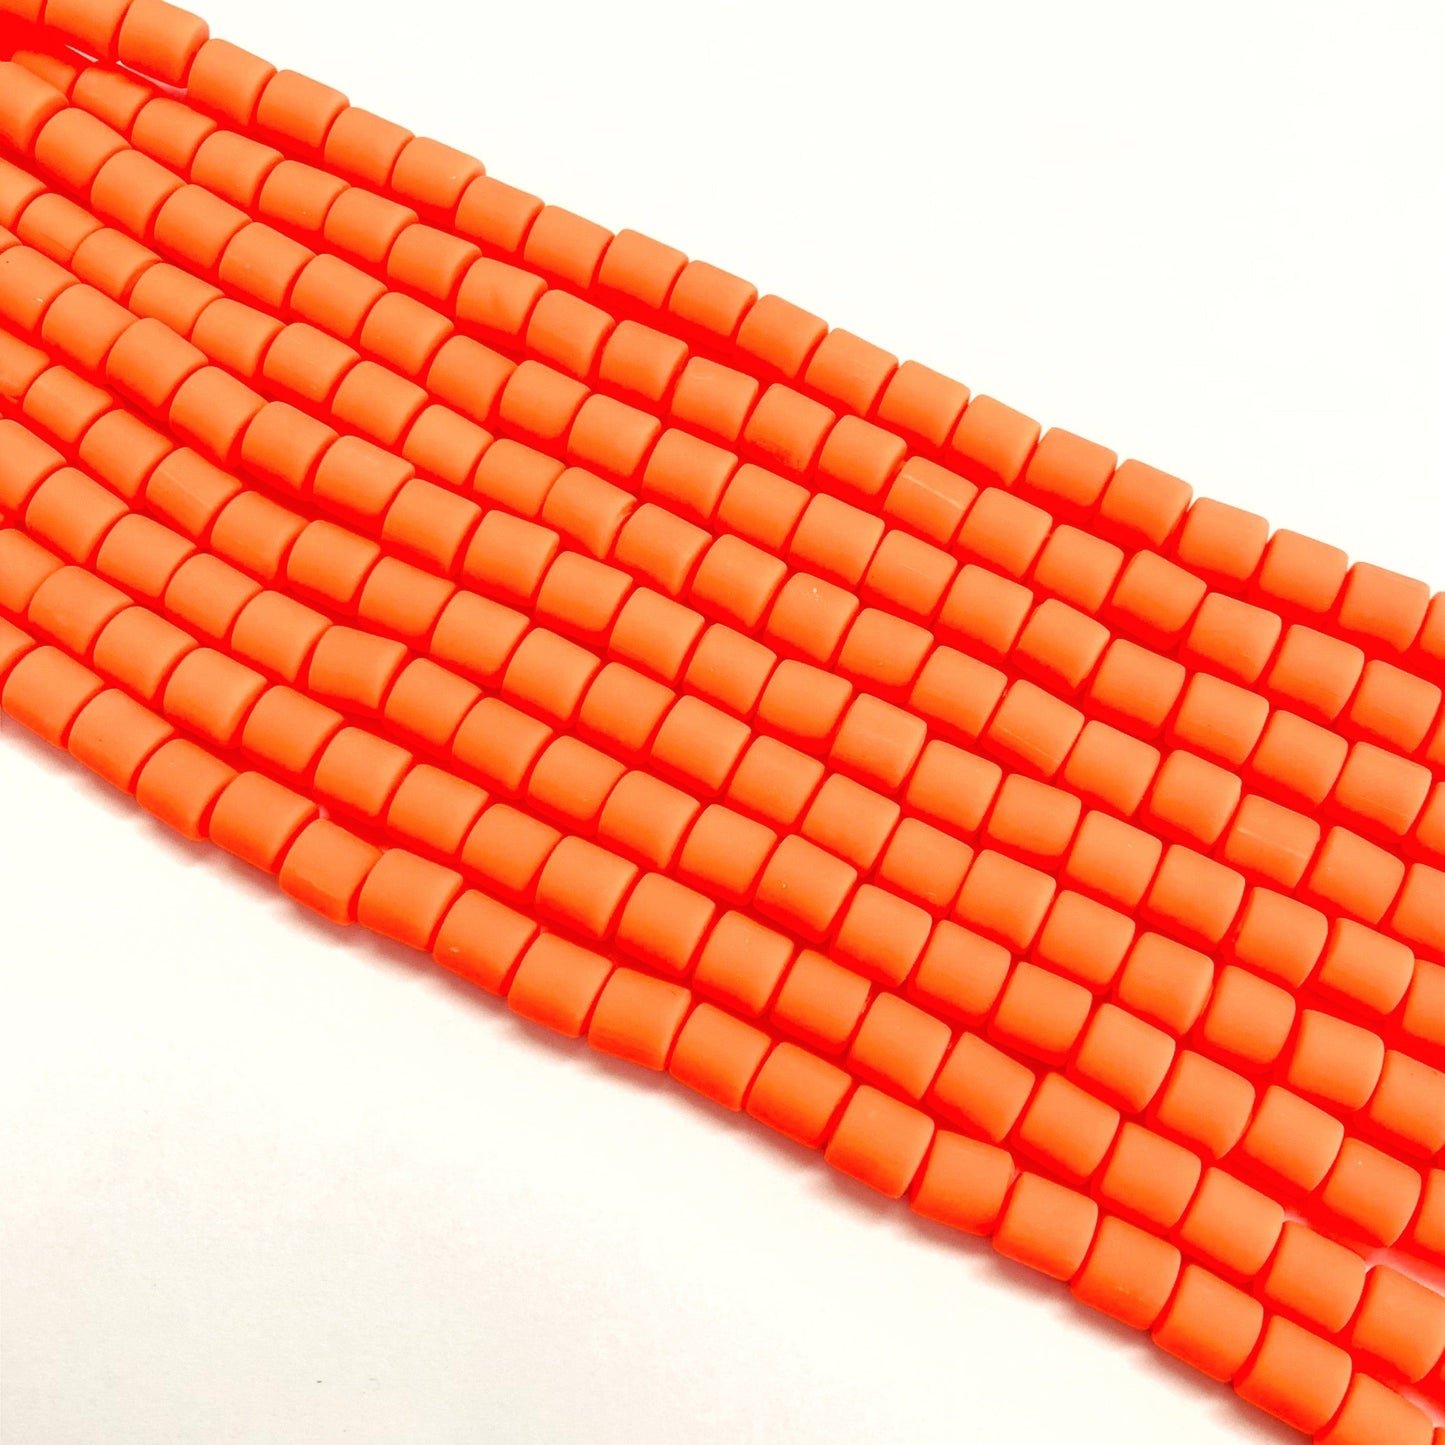 Polymer Clay Linolperlen -3 Neon Orange